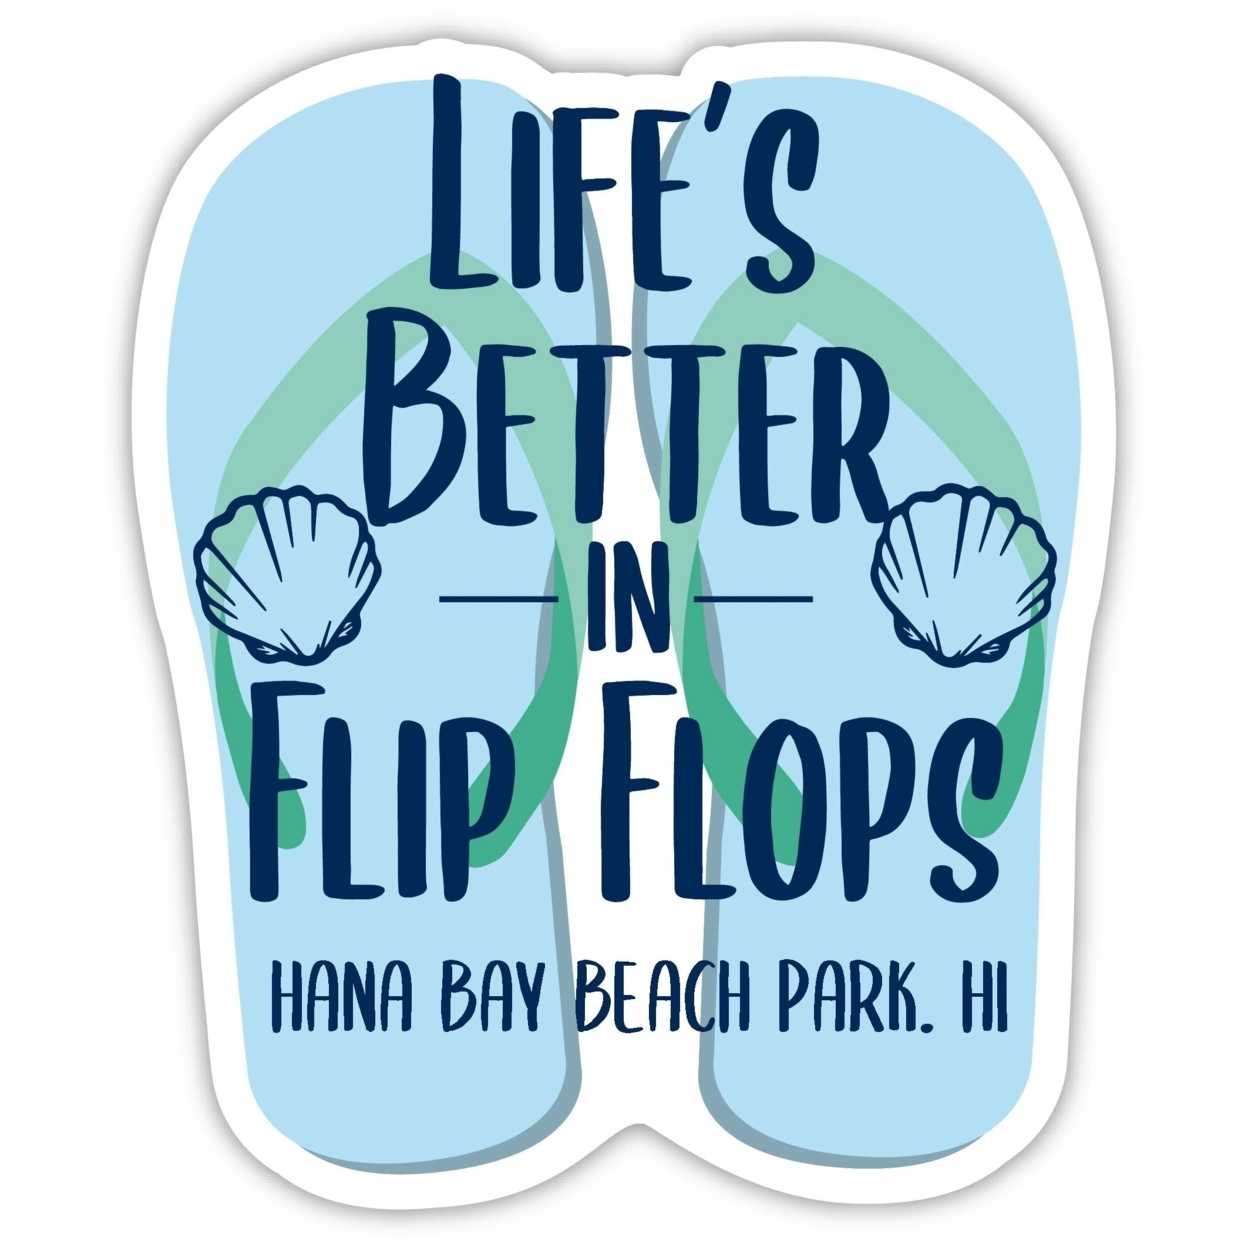 Hana Bay Beach Park Hawaii Souvenir 4 Inch Vinyl Decal Sticker Flip Flop Design